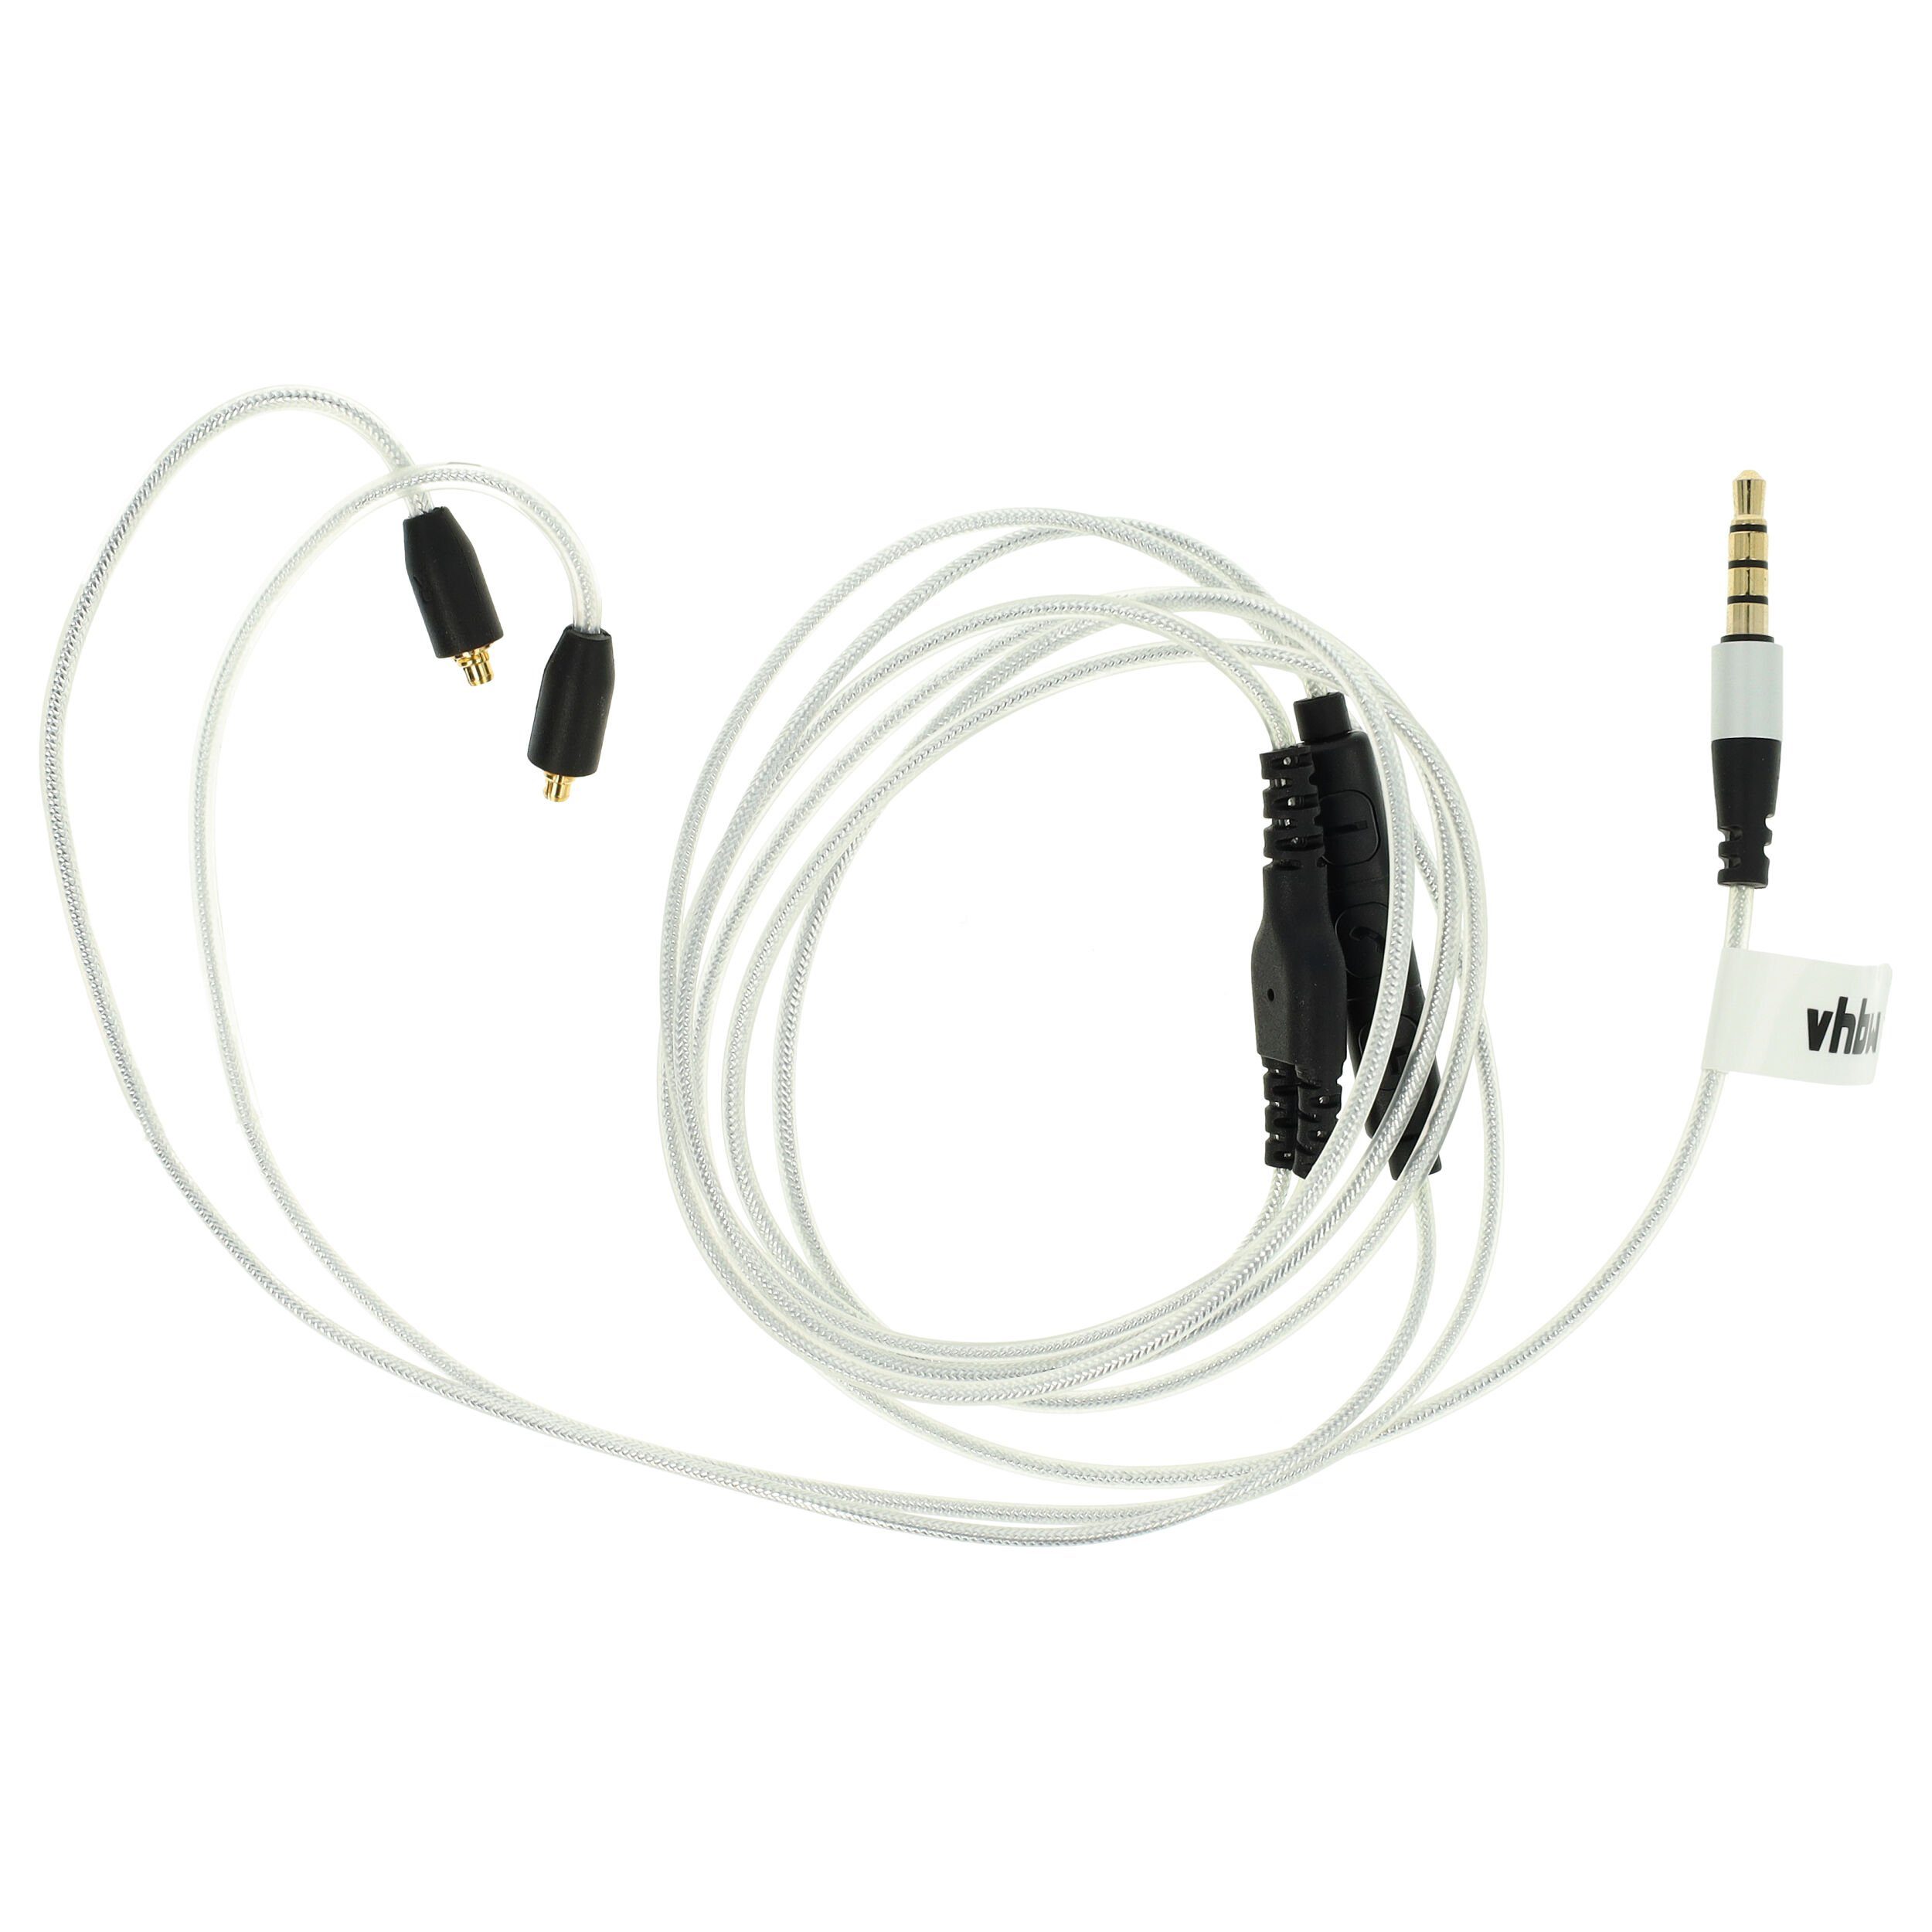 vhbw passend für Logitech Ultimate Ears UE 900 Kopfhörer Audio-Kabel,  passend für Logitech Ultimate Ears UE 900 Kopfhörer, Stecker-Ausführung:  gerade | Kabellänge: 120 cm | Gewicht: 11 g | Farbe: silber